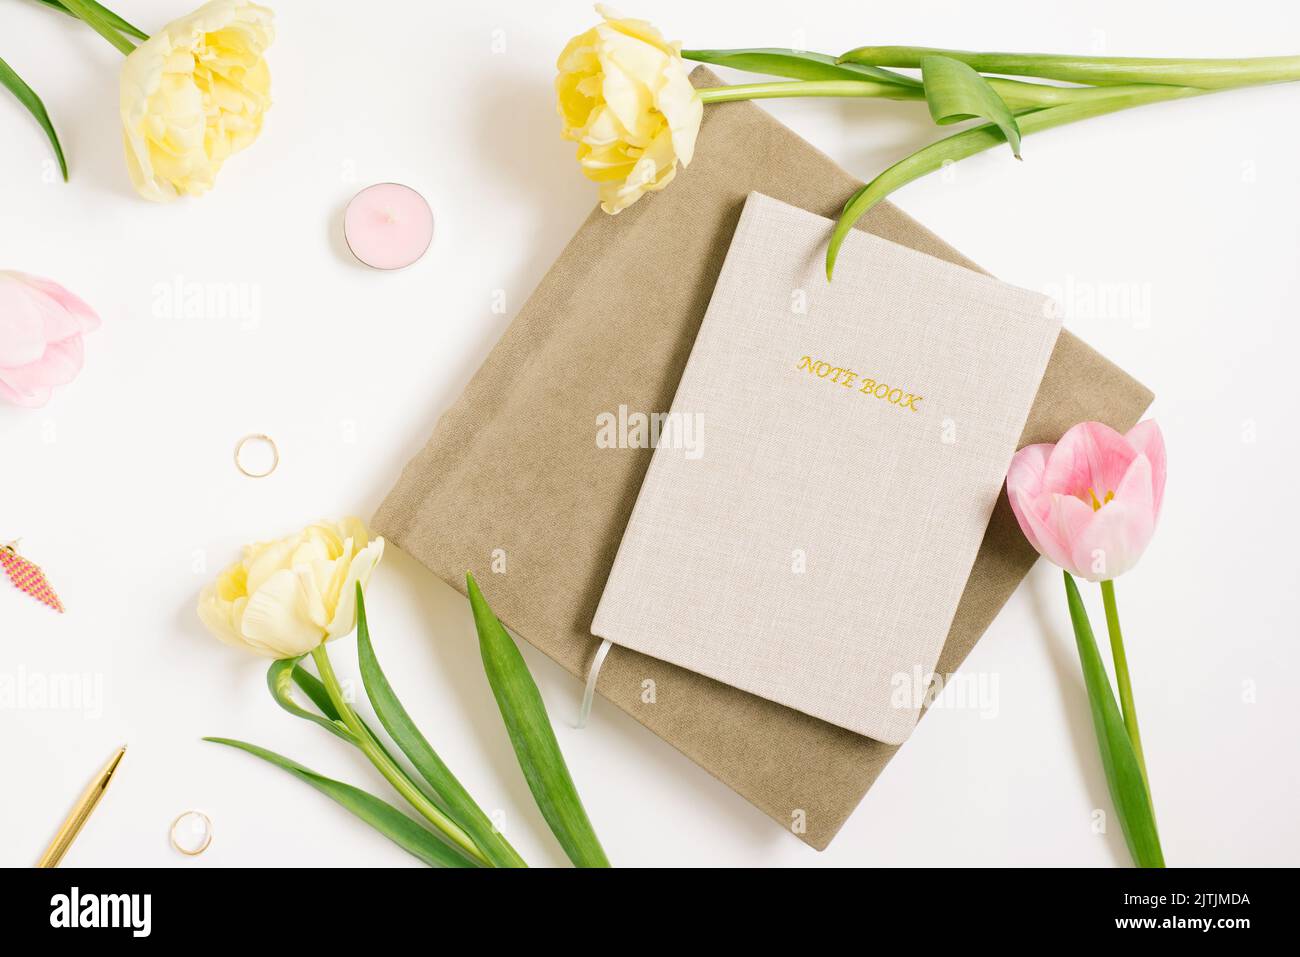 Frauenarbeitsplatz mit Notizbuch, rosa-gelben Tulpenblüten, Stift, Notizbüchern. Das Geschäftskonzept des Bloggers. Flache Position, Draufsicht. Stockfoto